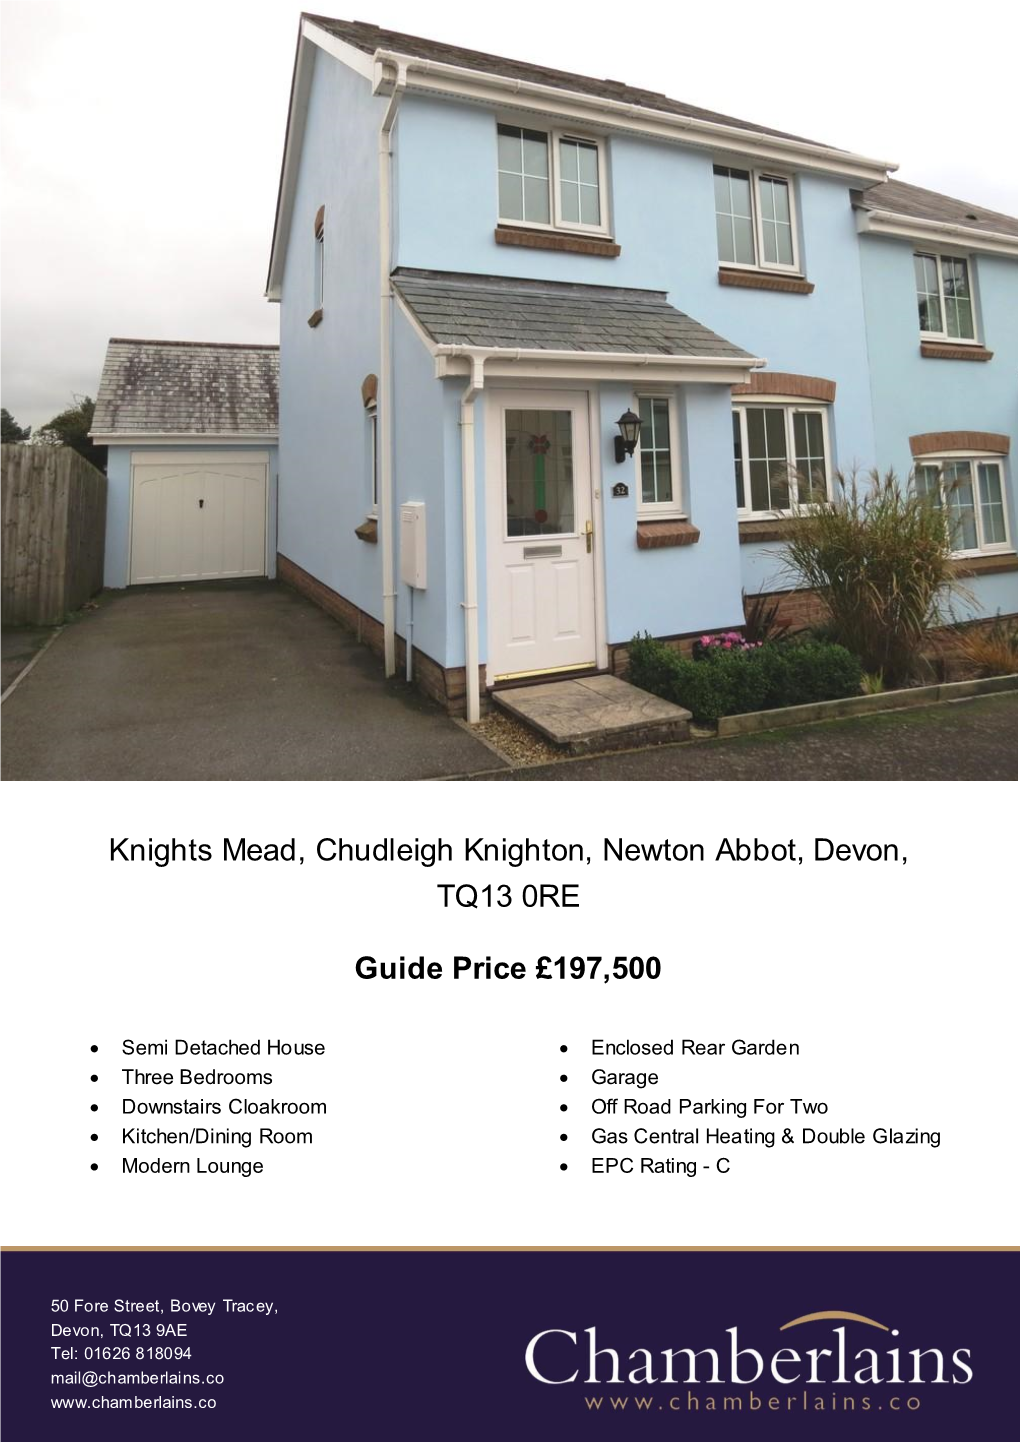 Knights Mead, Chudleigh Knighton, Newton Abbot, Devon, TQ13 0RE Guide Price £197,500